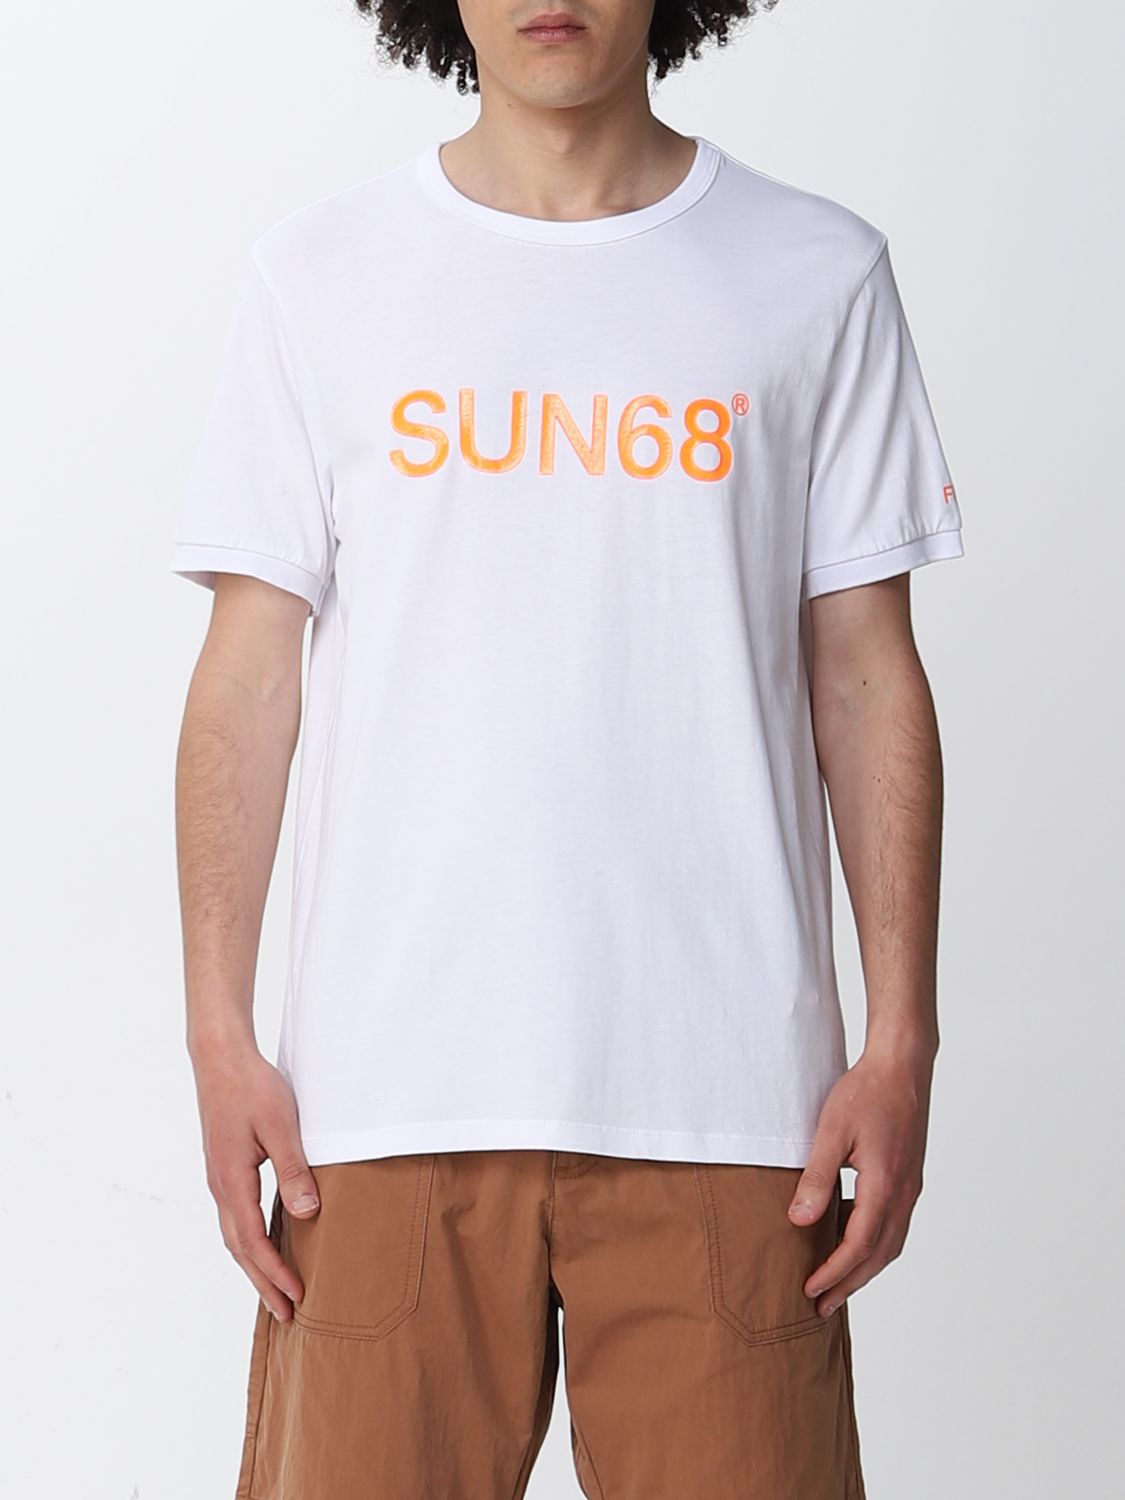 T-shirt Sun 68: Sun 68 t-shirt for man white 1